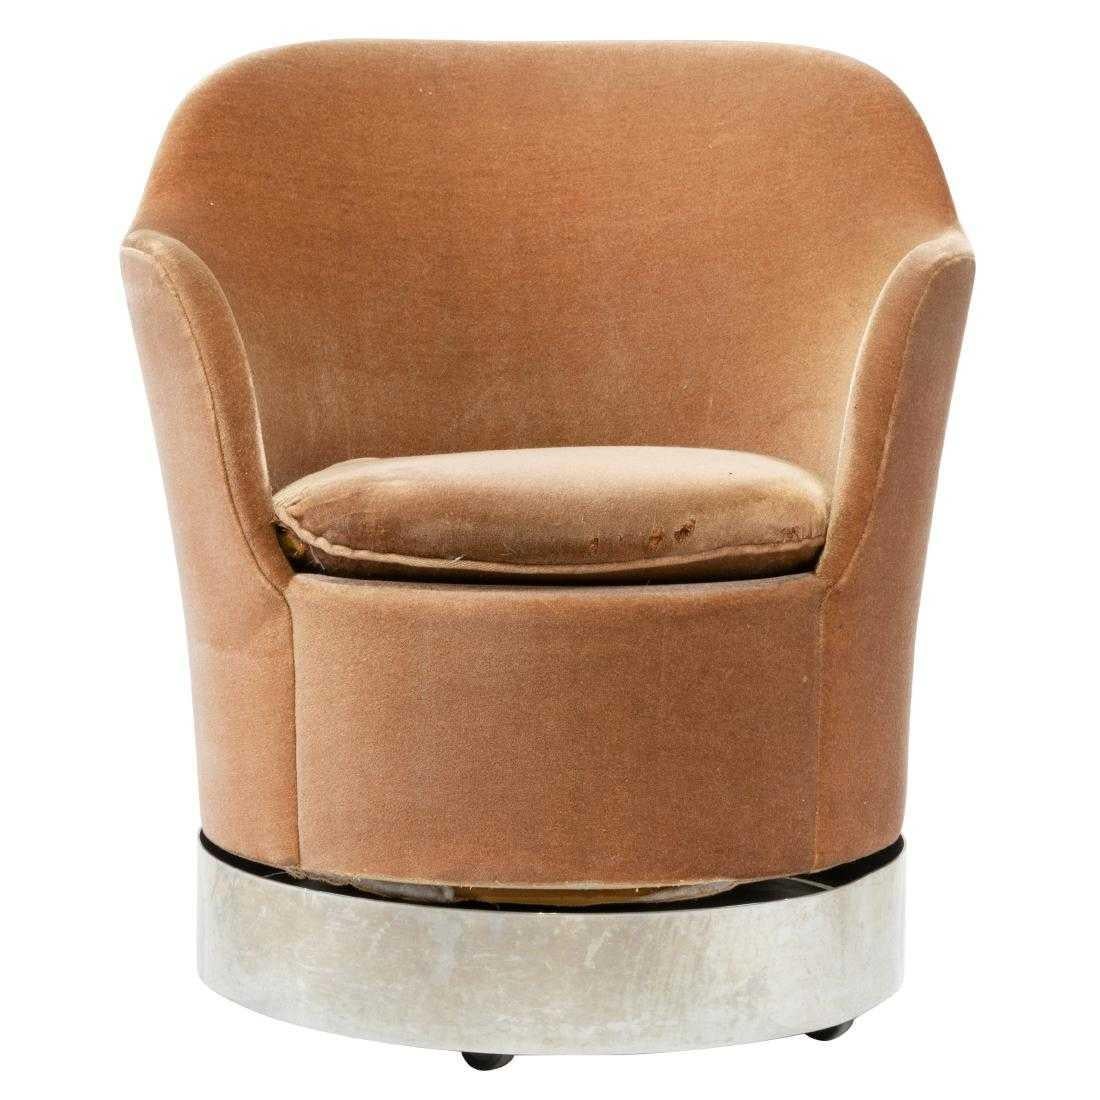 Drei Philip Enfield-Drehstühle. Originales Paar Drehstühle aus den 1970er Jahren von Phillip Enfield. Diese Stühle haben polierte Stahlgestelle mit originaler Mohair-Polsterung. Die Stühle sind drehbar, schaukeln und rollen leichtgängig auf Rollen.